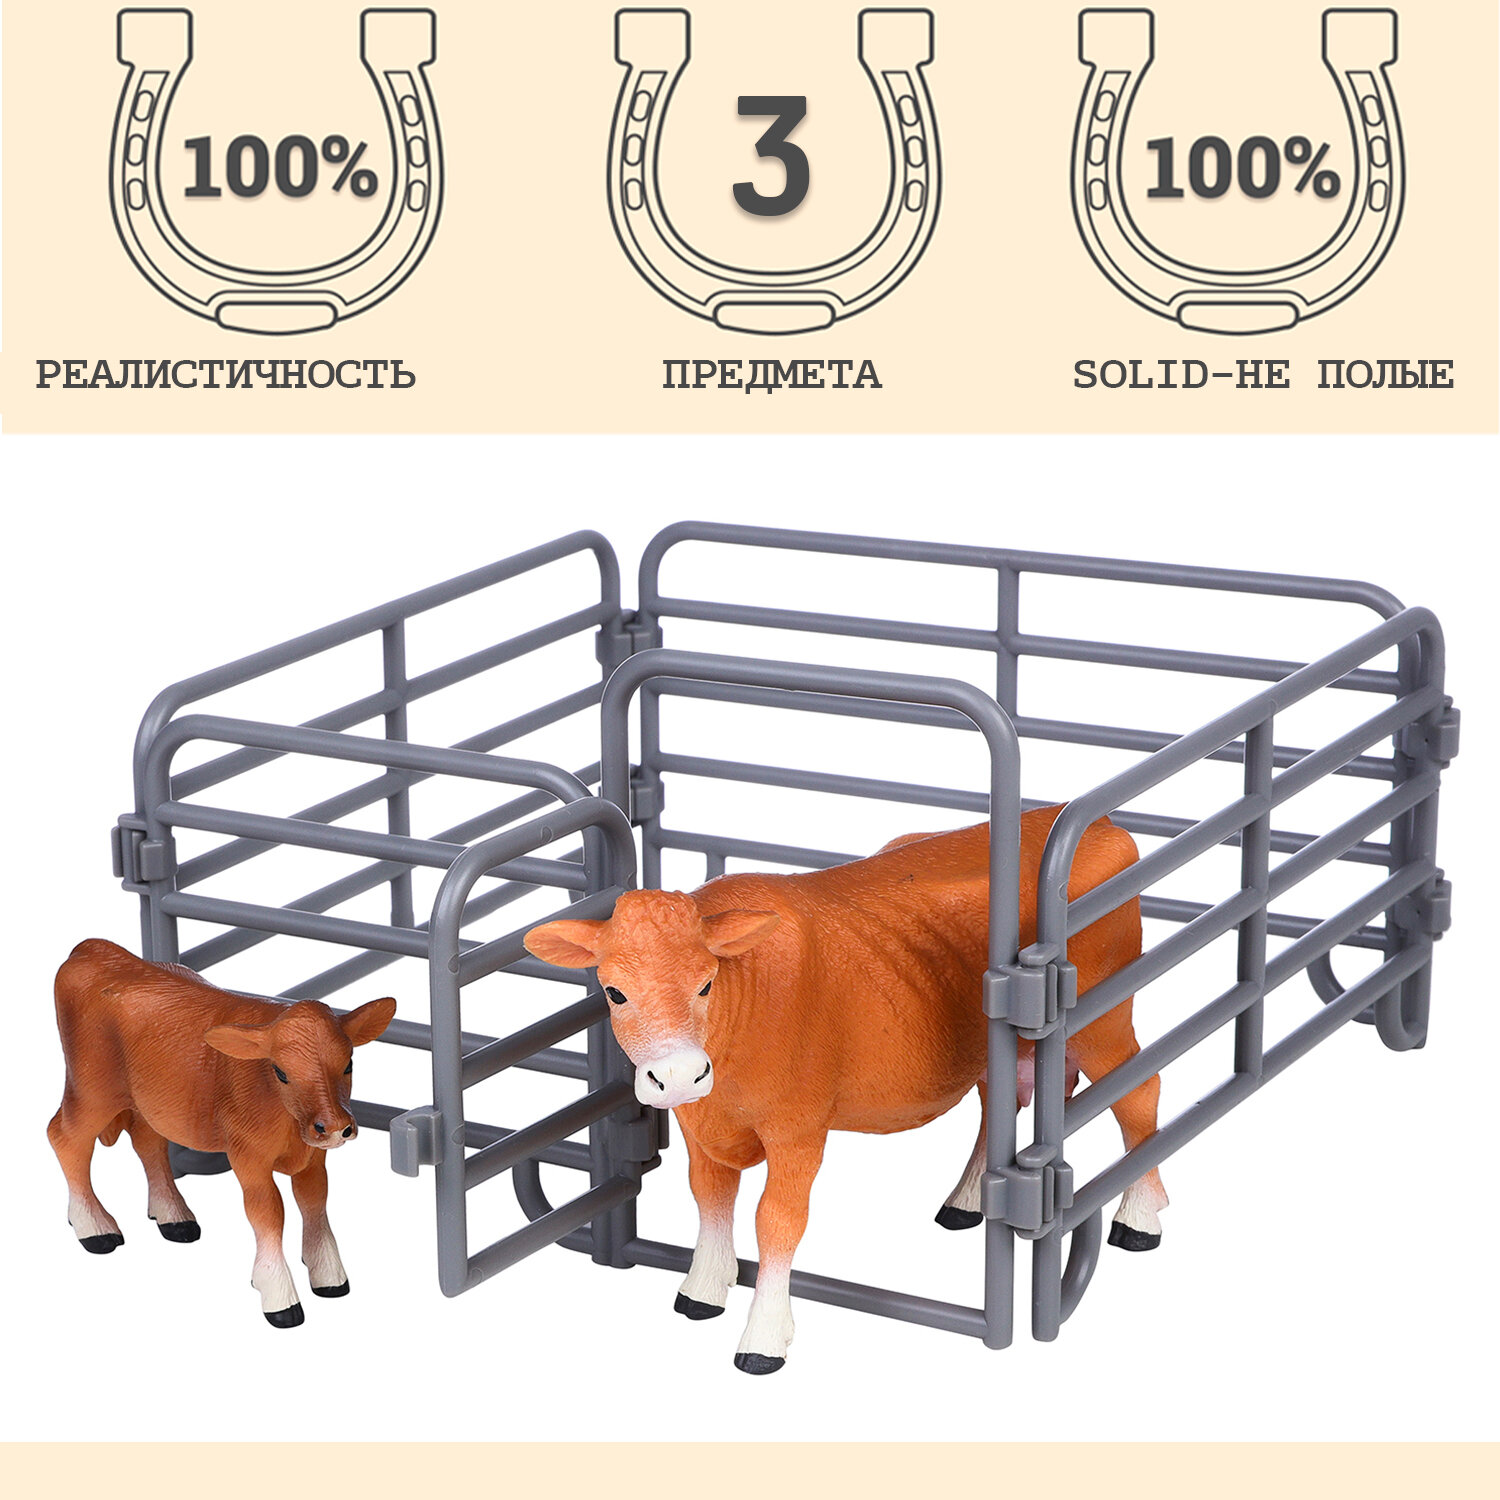 Игрушки фигурки в наборе серии "На ферме", 3 предмета (корова рыжая, теленок, ограждение-загон)